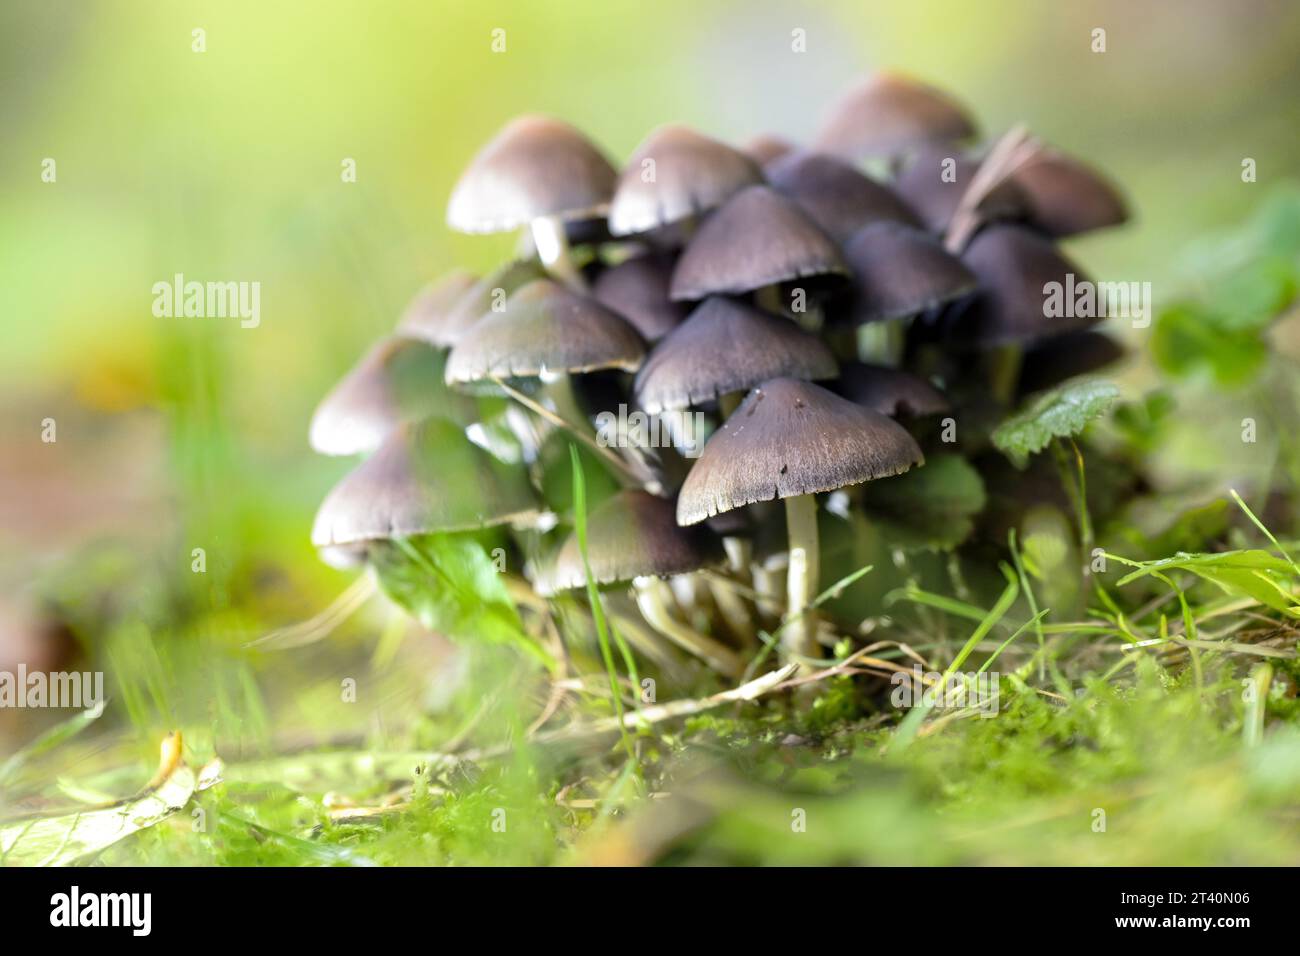 Pilzgruppe (wahrscheinlich Psathyrella pygmaea), Pilze mit braunen Kappen und dünnen weißen Hohlstämmen in grünem Moos in einem Laubwald, Kopierraum, Stockfoto